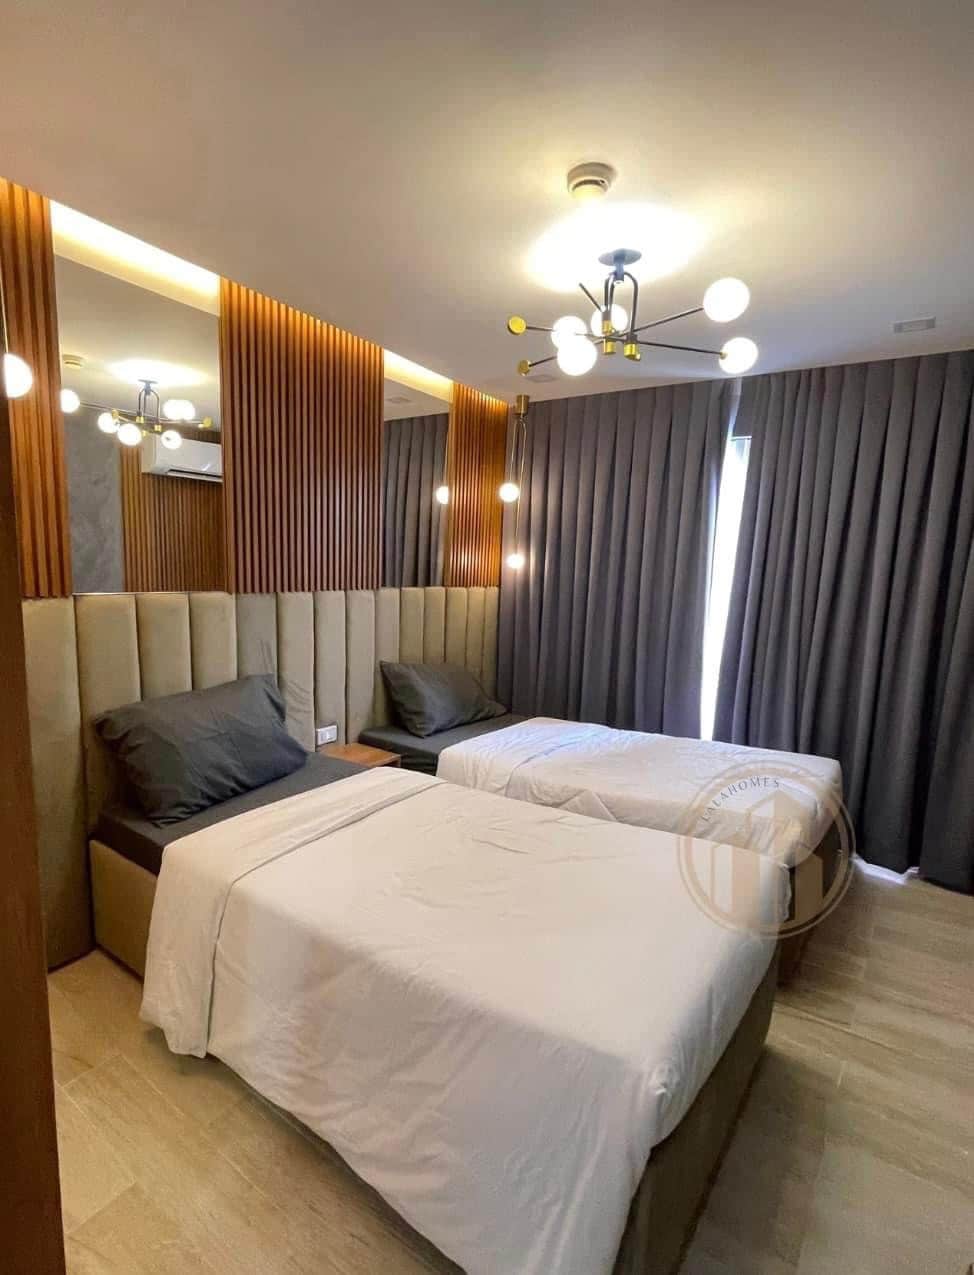 2 bedroom near Nustar,Cebu Ocean Park & SM Mall